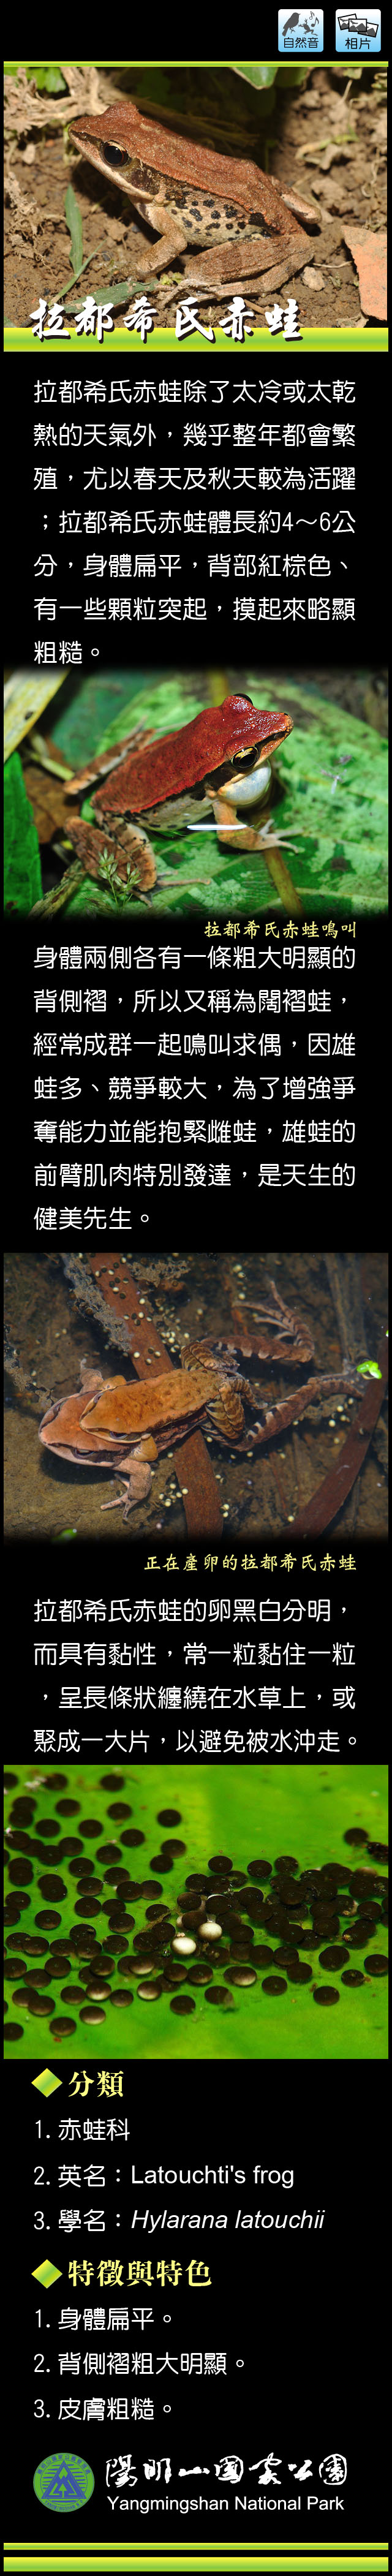 拉都希氏赤蛙介紹